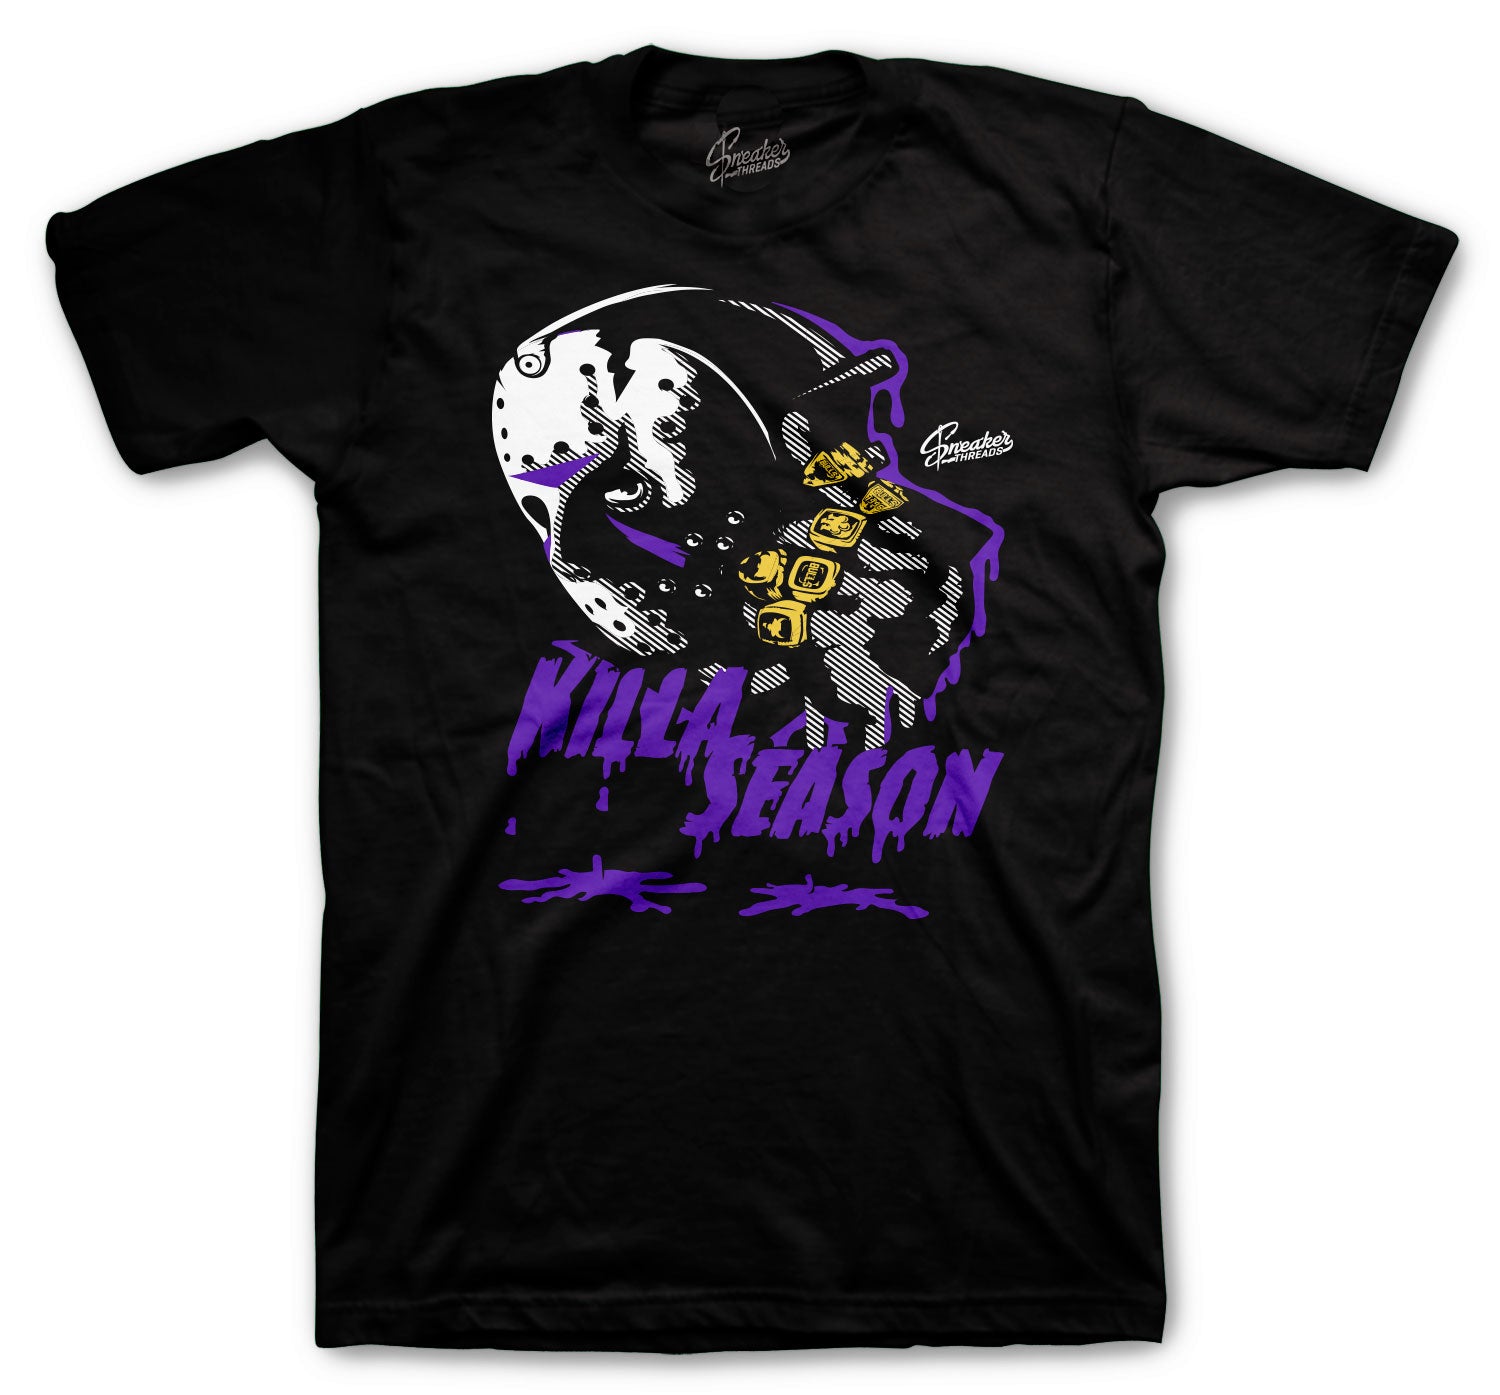 Retro 13 Court Purple Shirt - Killa Season - Black